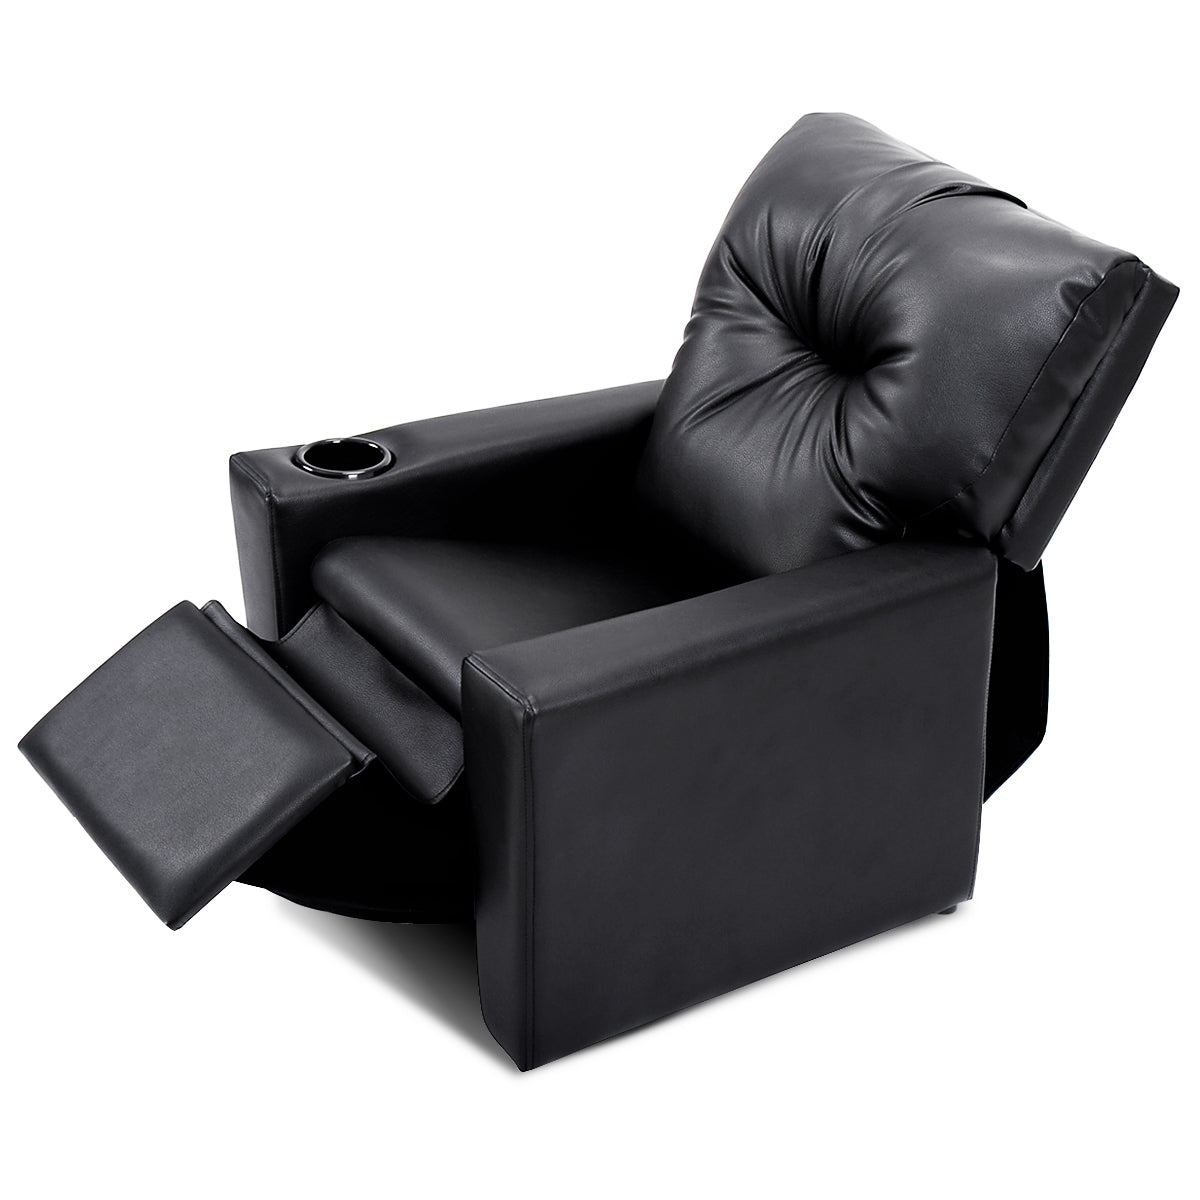 Black Kids Lounge Chair: Adjustable Comfort with Armrest and High Backrest